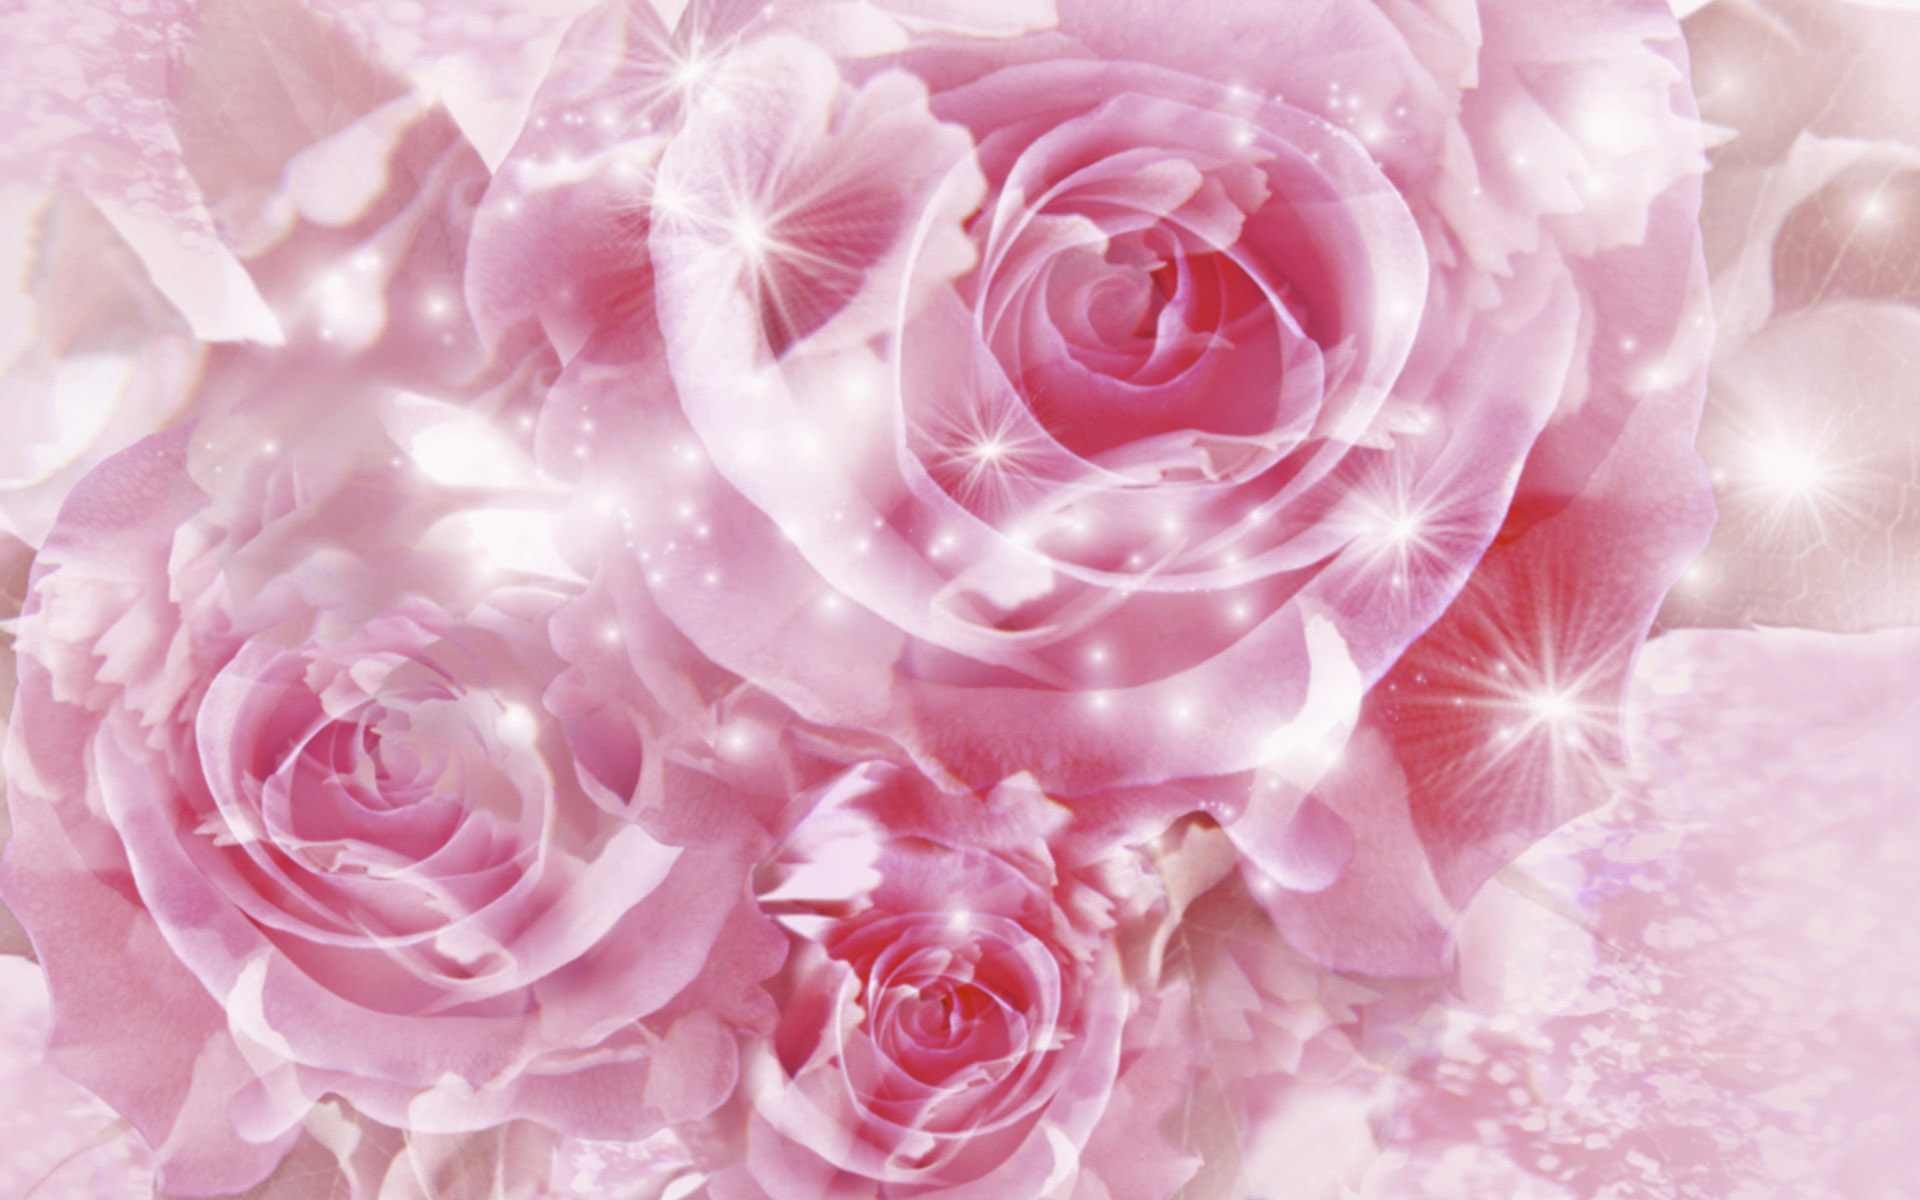 Hình nền hoa hồng màu hồng nhạt là một lựa chọn hoàn hảo để làm nổi bật bức ảnh của bạn. Hãy xem ngay để tận hưởng sự đẹp và nữ tính của chiếc ảnh này. Translation: The light pink rose background is a perfect choice to highlight your image. Check it out now to enjoy the beauty and femininity of this image.